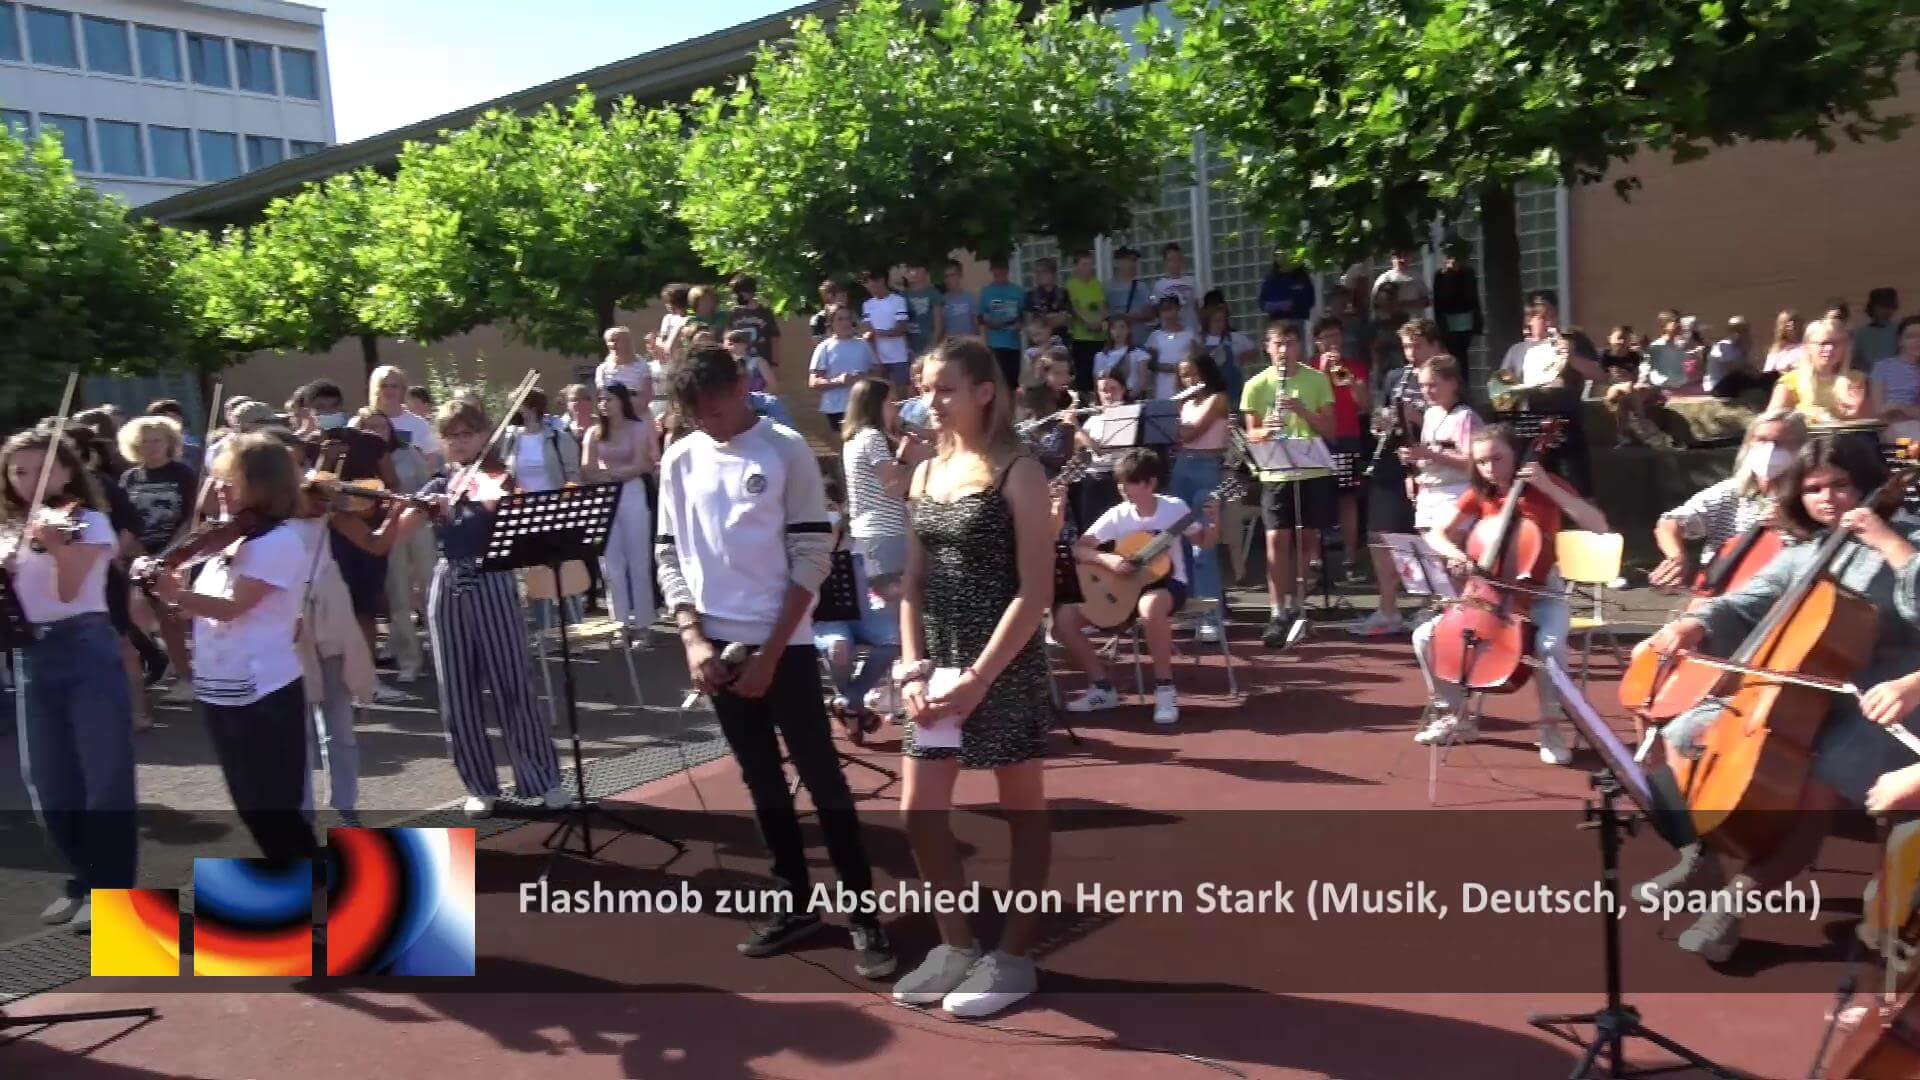 Flashmob musical pour le départ à la retraite de M. Stark